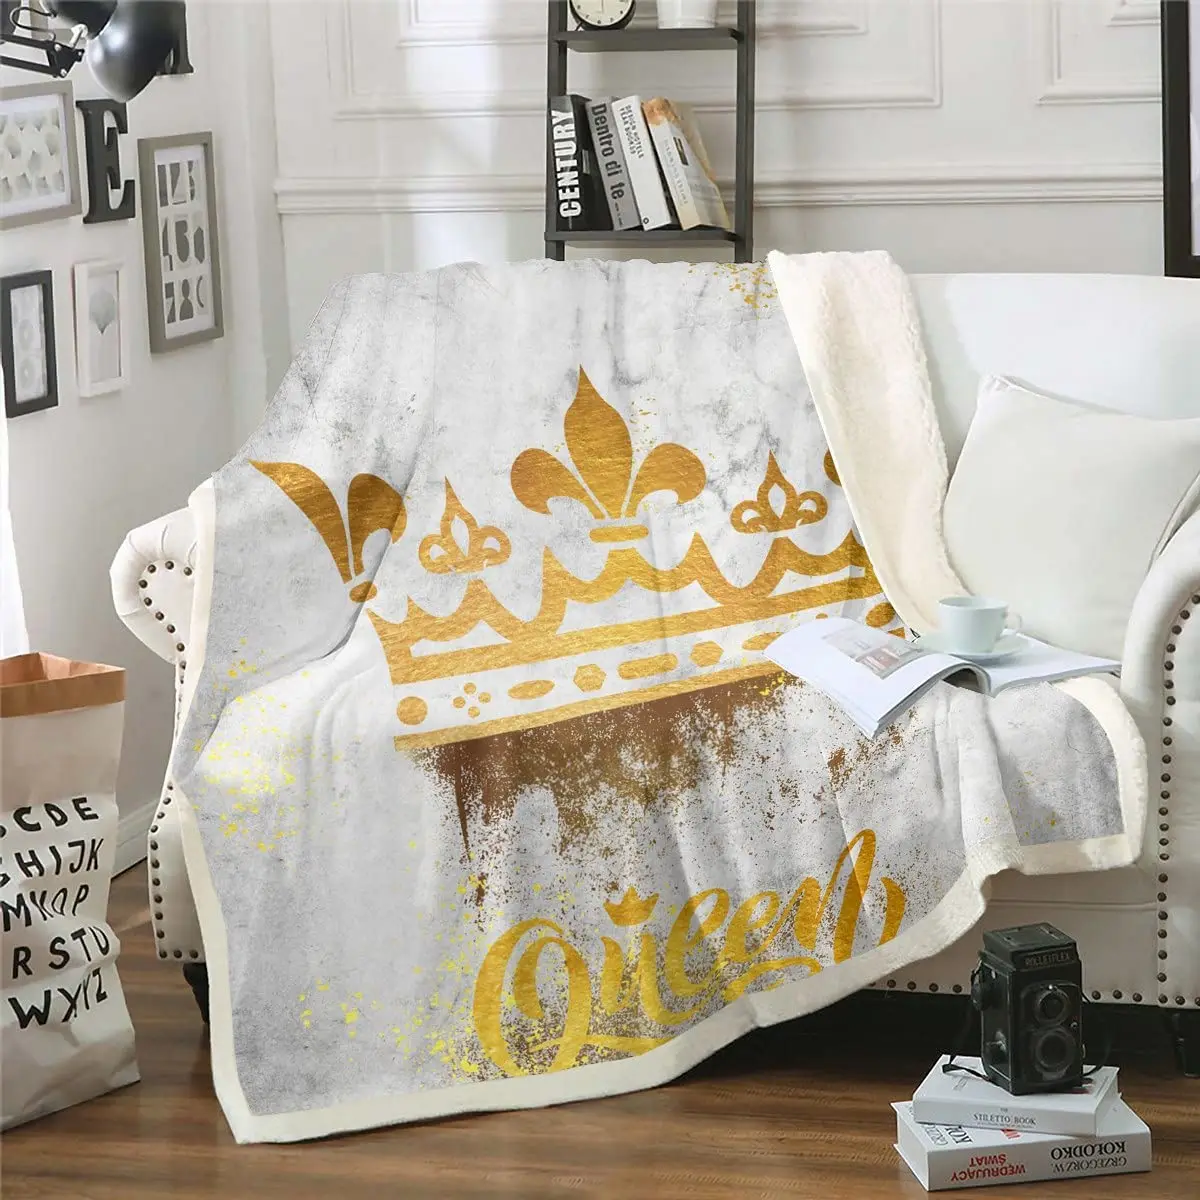 

Golden Queen Crown Flannel Blanket,Grunge Ink Fluid Art Throw Blanket Vintage Grey Tie Dye Retro Abstract Marble Texture Blanket